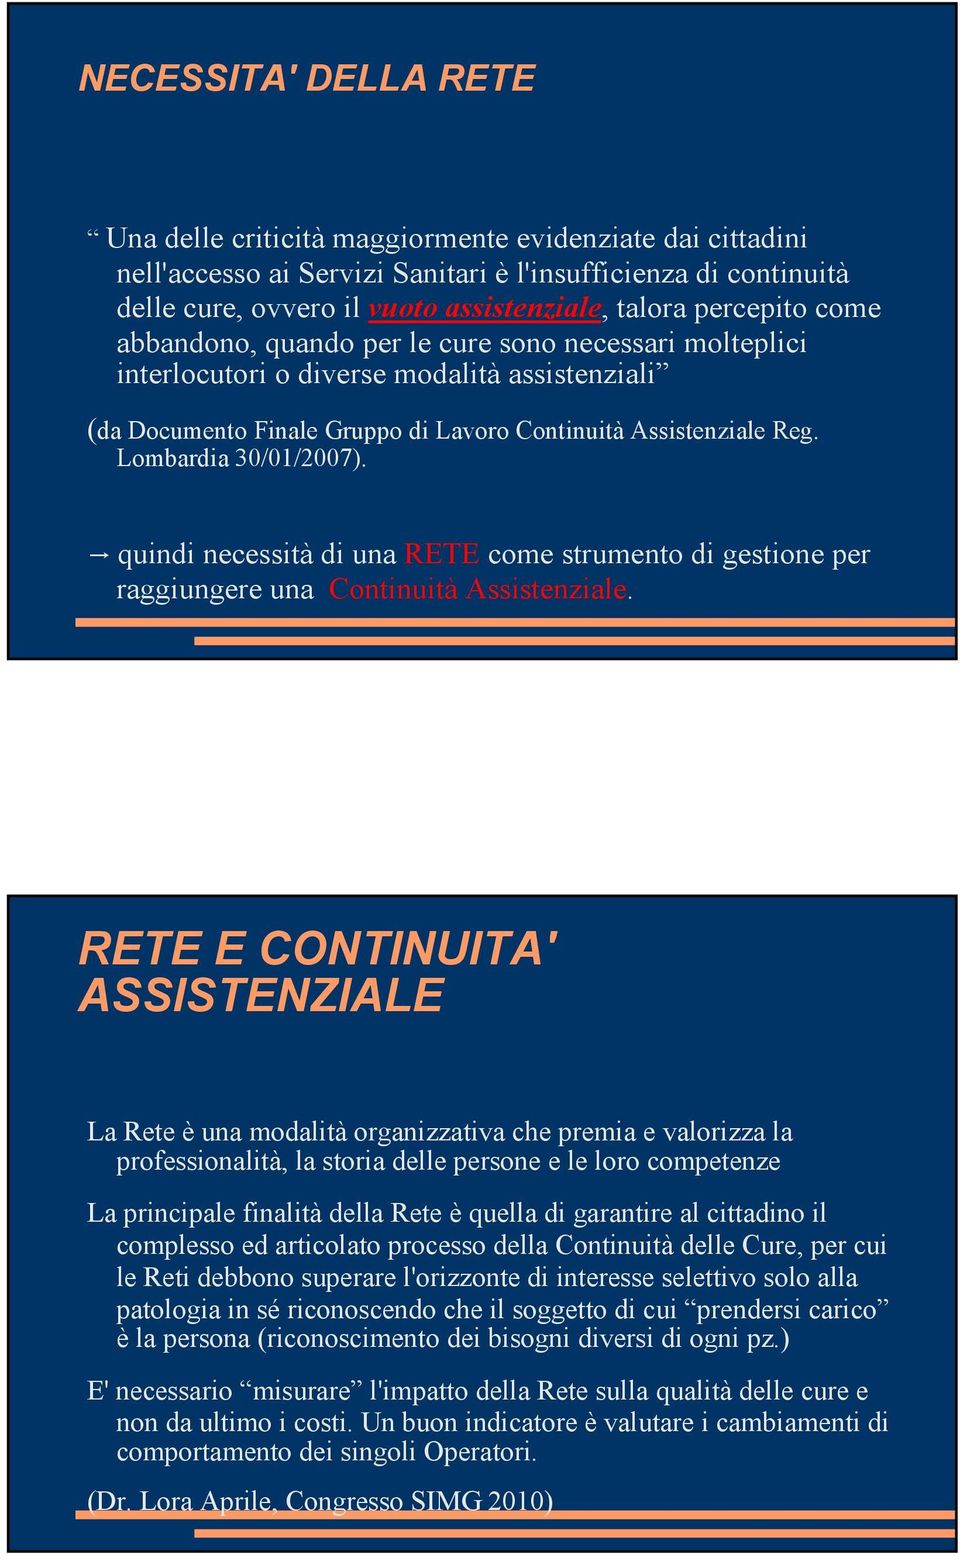 Lombardia 30/01/2007). quindi necessità di una RETE come strumento di gestione per raggiungere una Continuità Assistenziale.